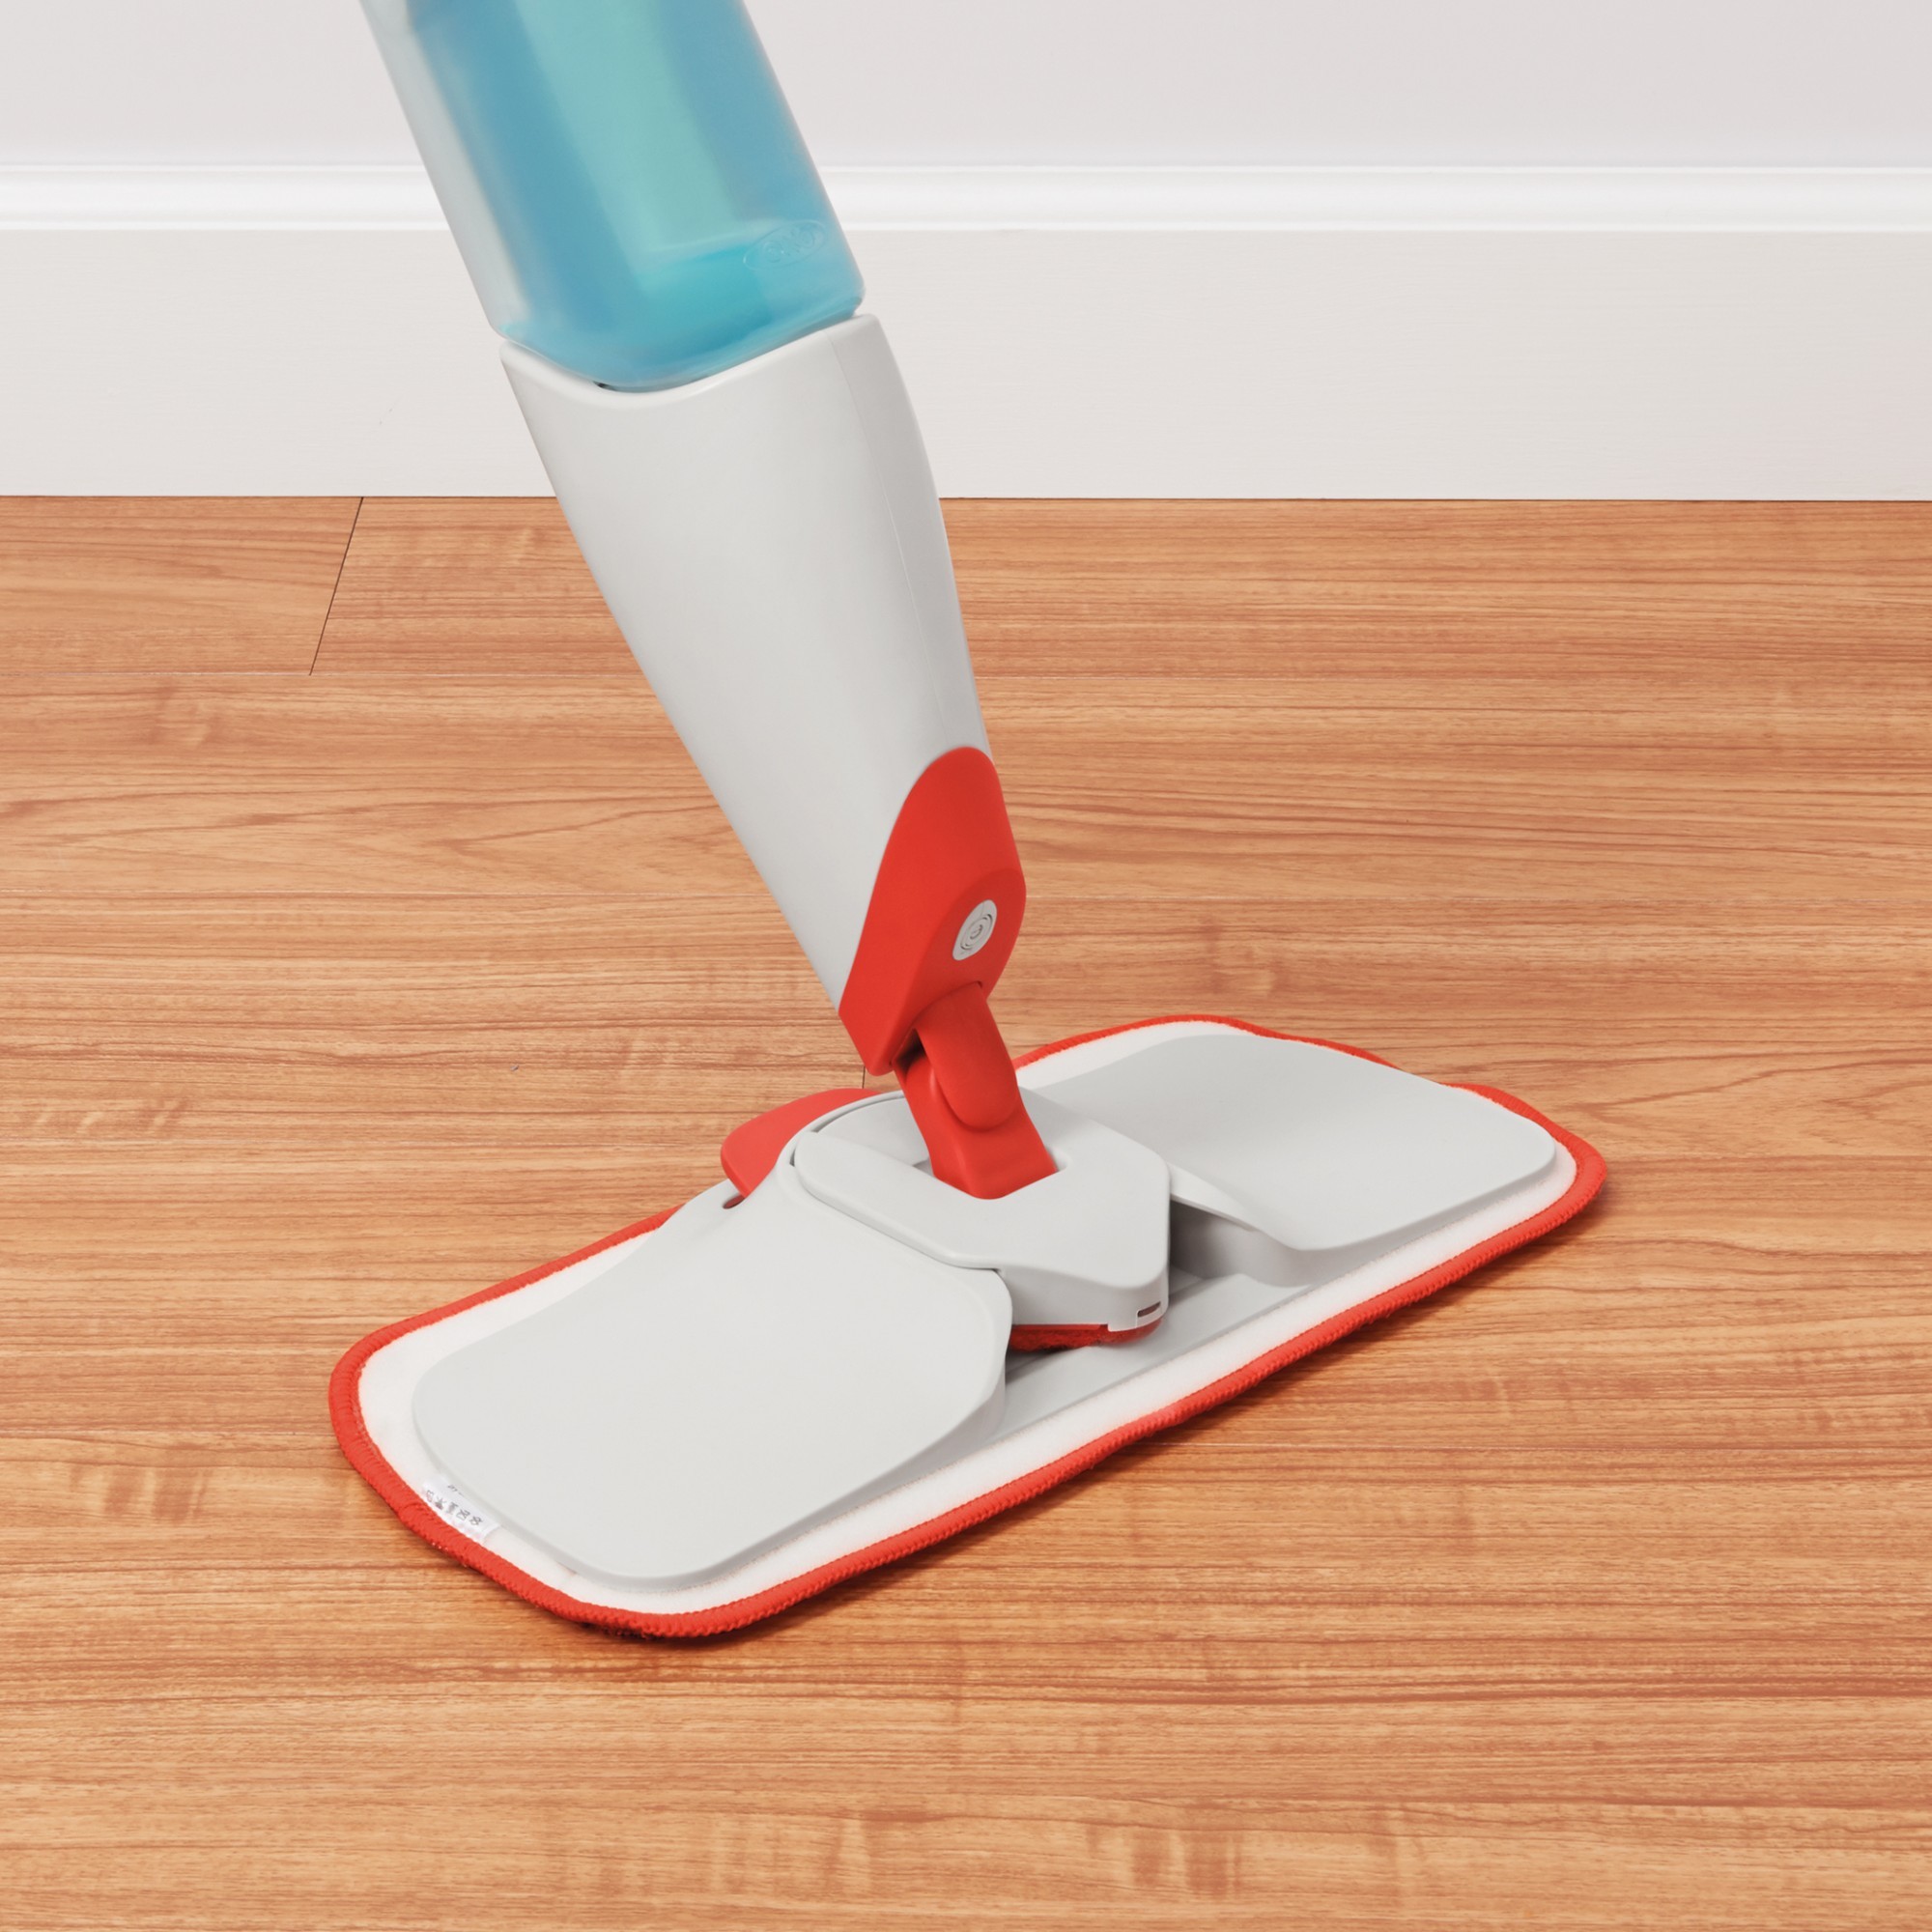 2-piece 'Spray' mop scrubber refills, Good Grips - OXO